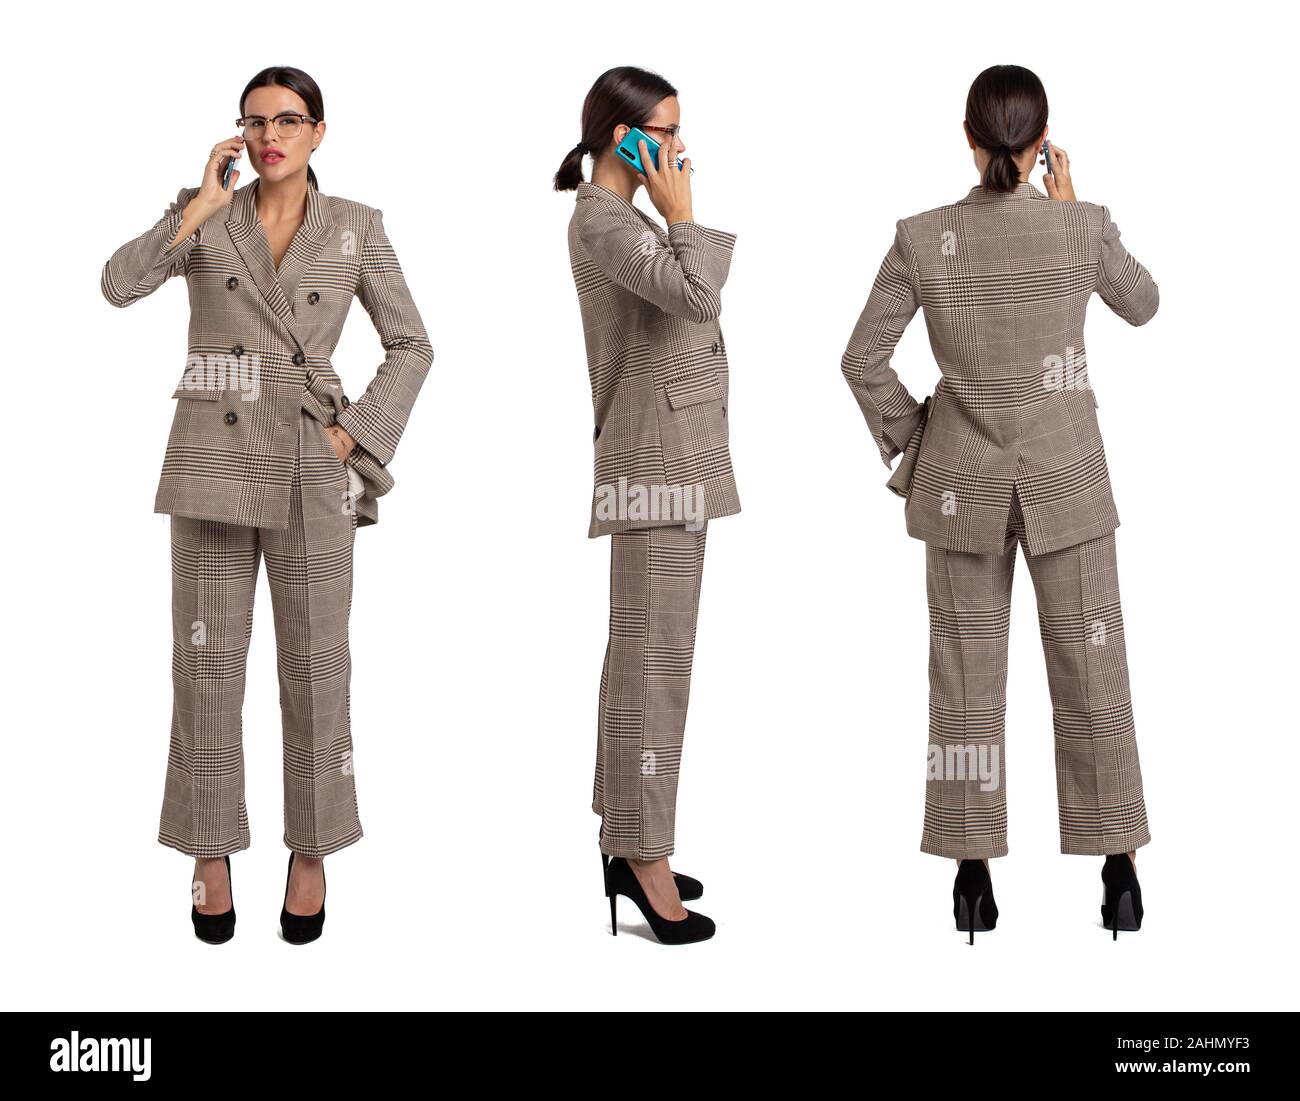 Professional businesswoman in gray chequer répondre à l'appel avant, côté, vue de dos, isolated on white Banque D'Images